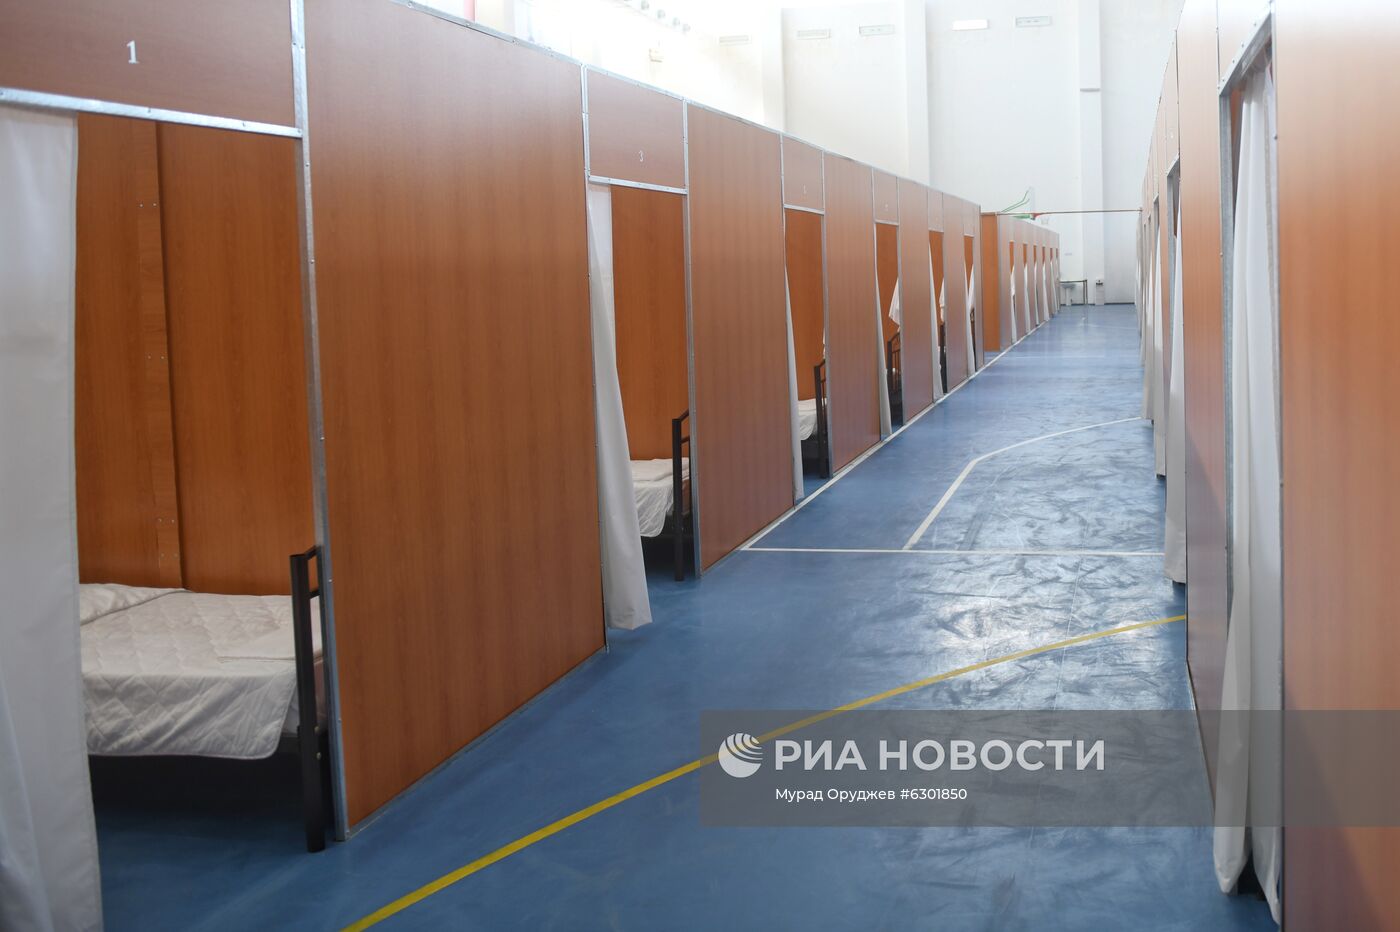 Олимпийский спортивный комплекс в Баку переоборудован в госпиталь